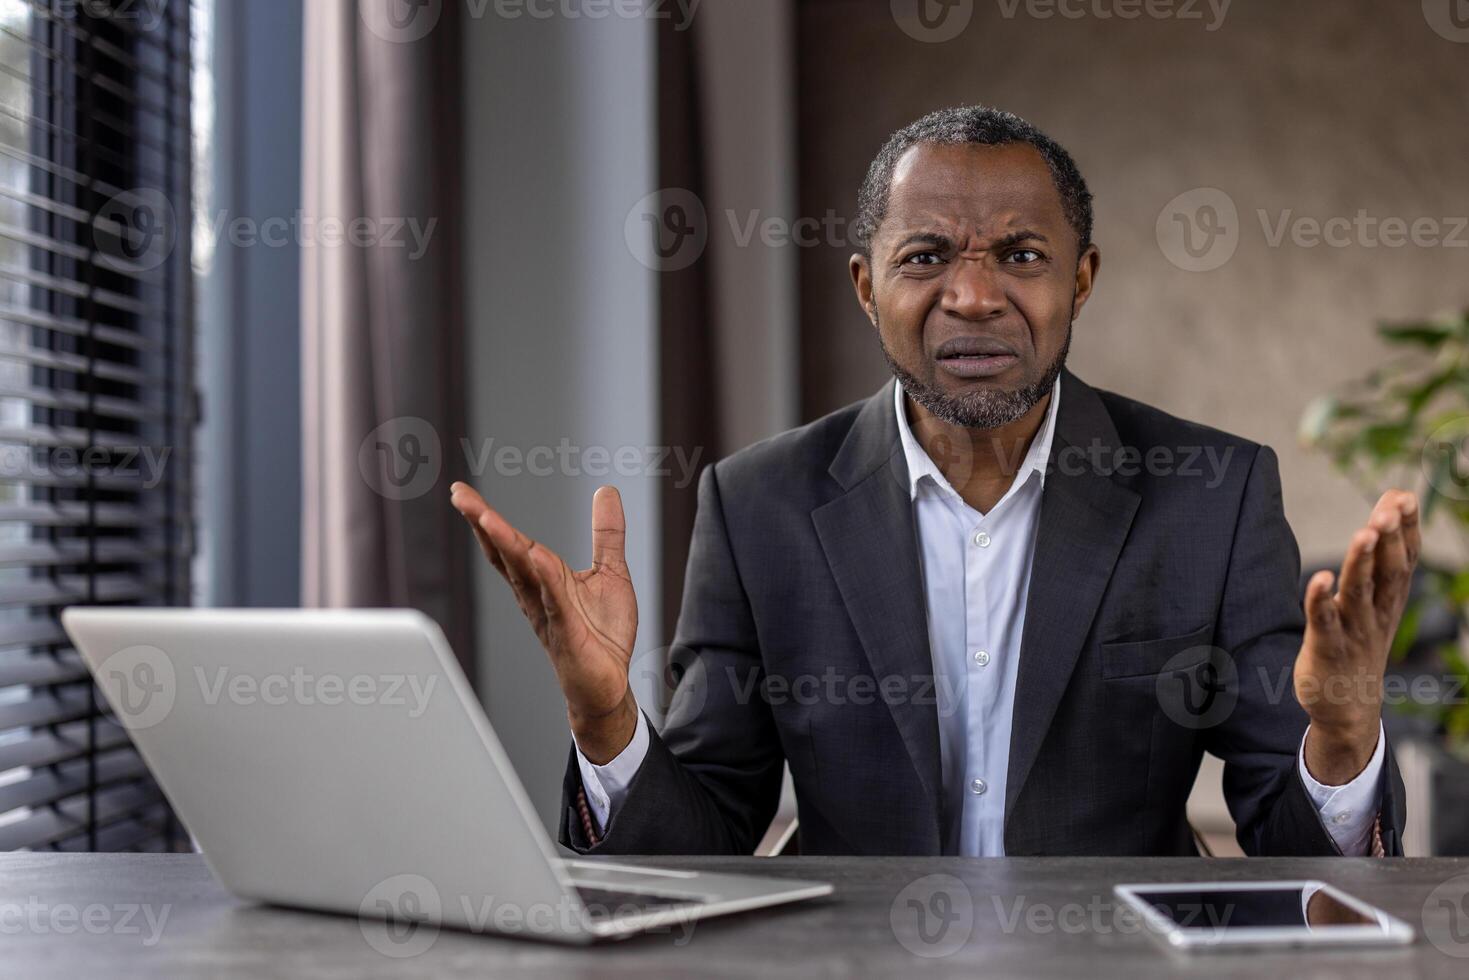 förvirrad afrikansk amerikan affärsman i en kostym gester med osäkerhet på hans kontor skrivbord med bärbar dator och läsplatta. foto